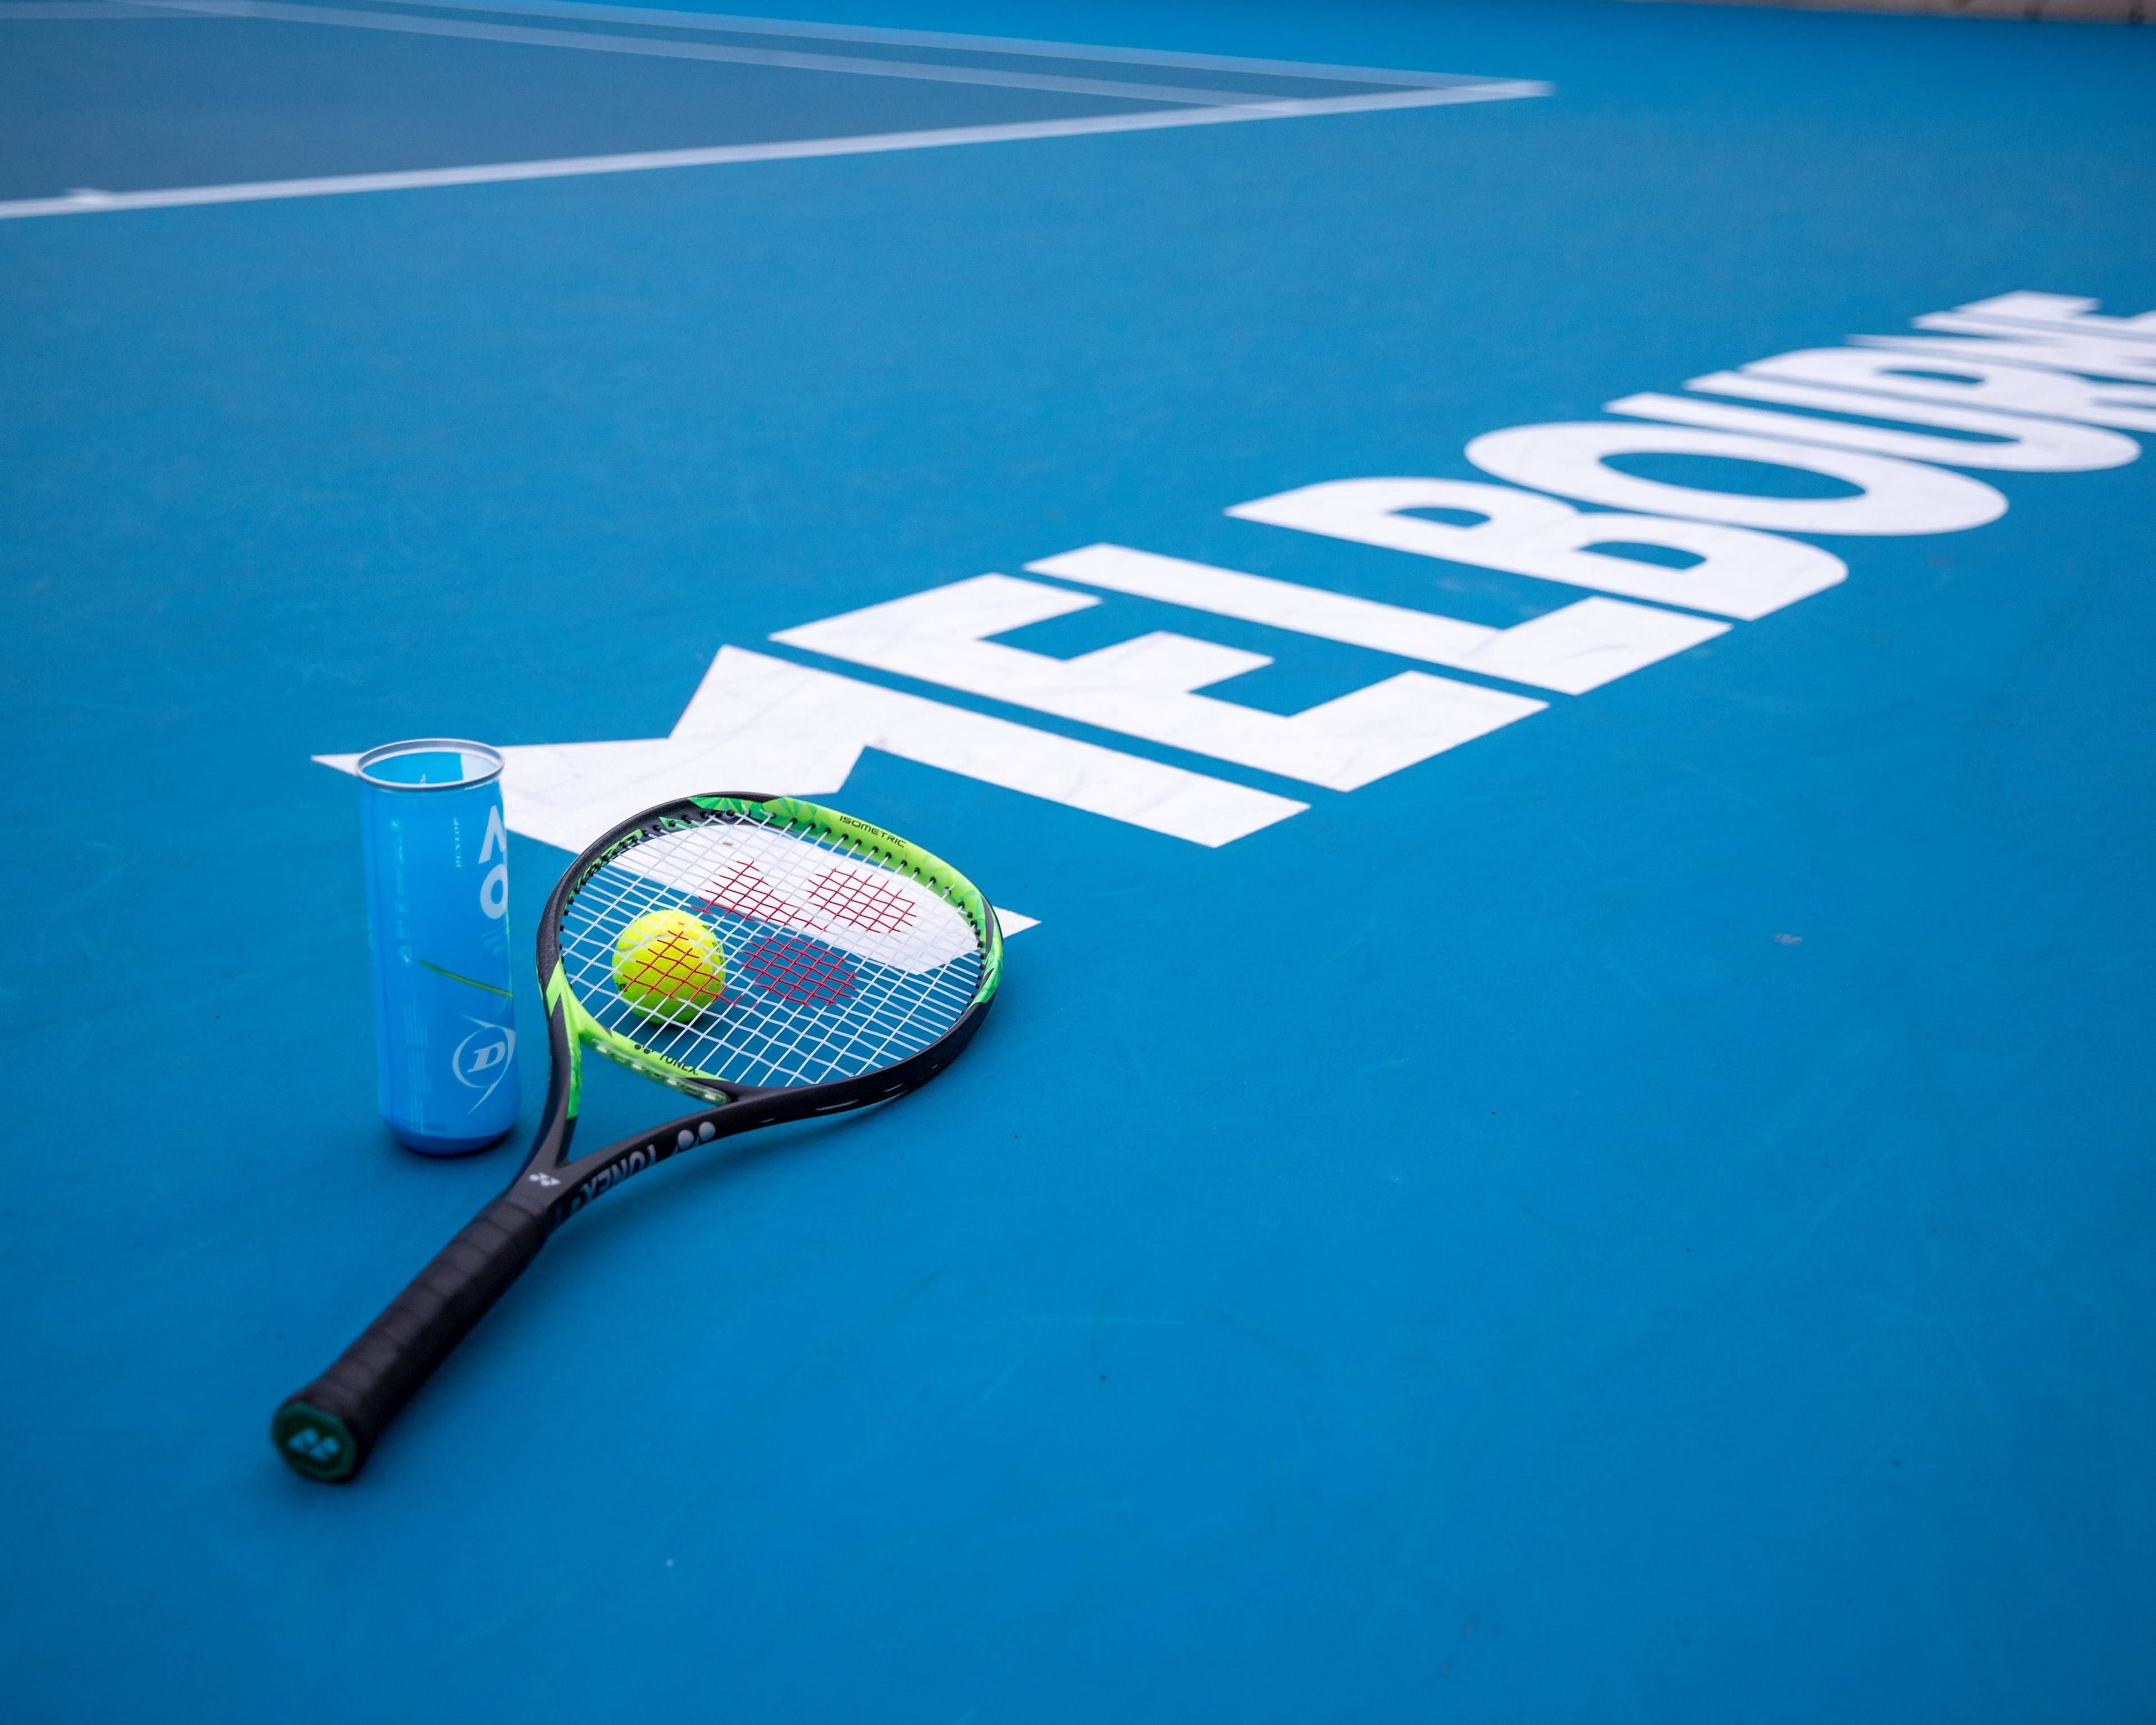 Découvrez le Sud Est autour de l'Open de tennis d'Australie